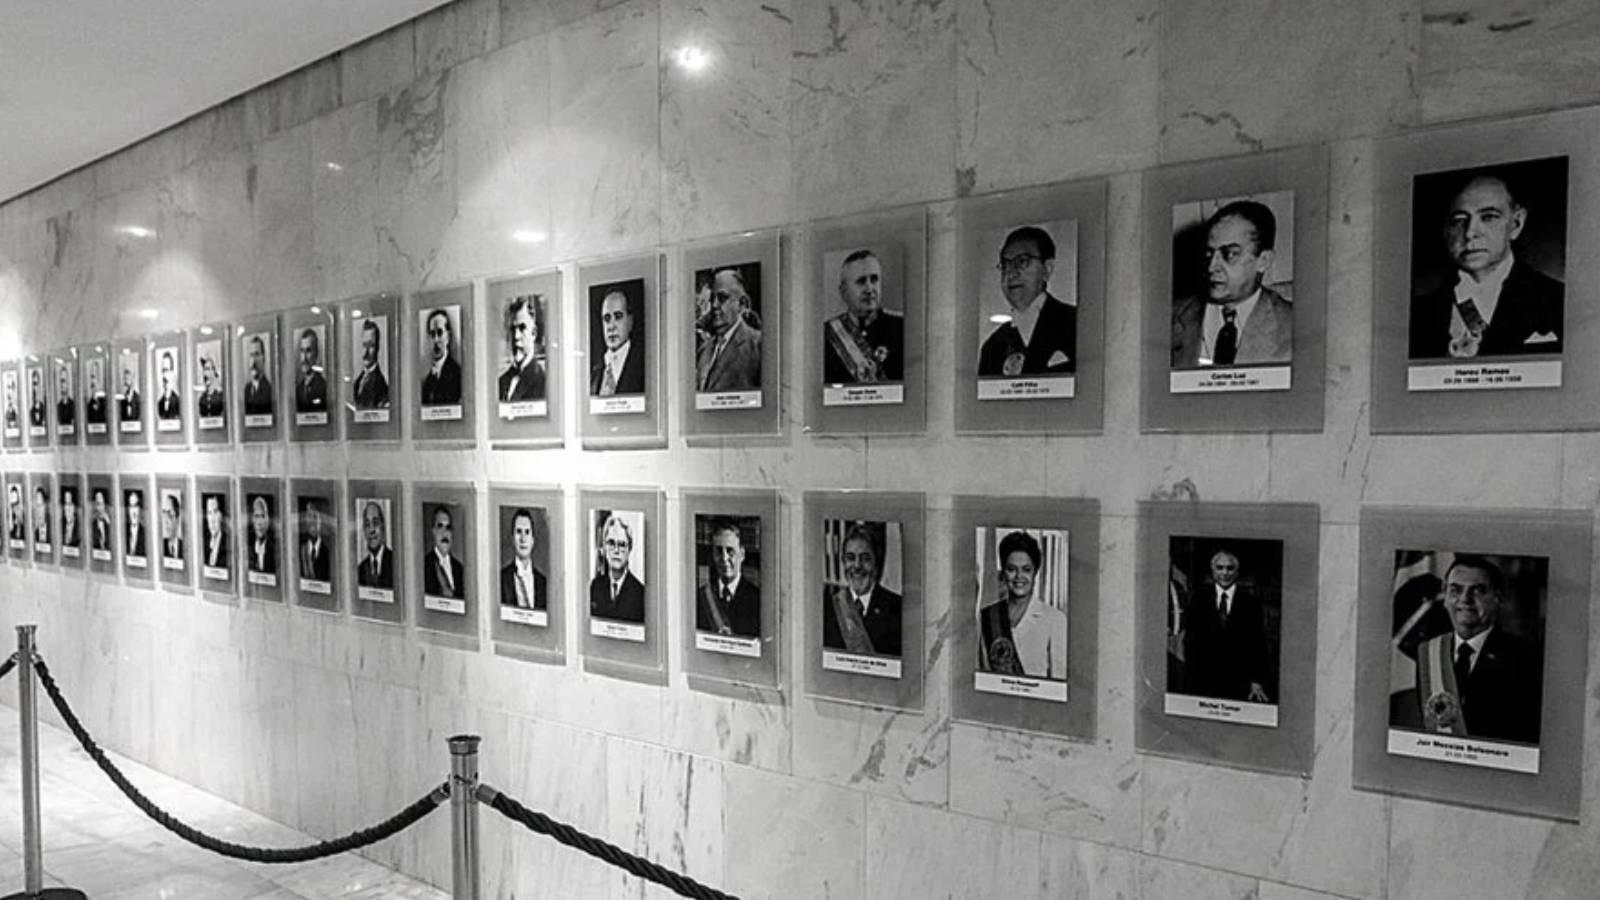 Galeria dos Ex-presidentes antes da invasão de manifestantes